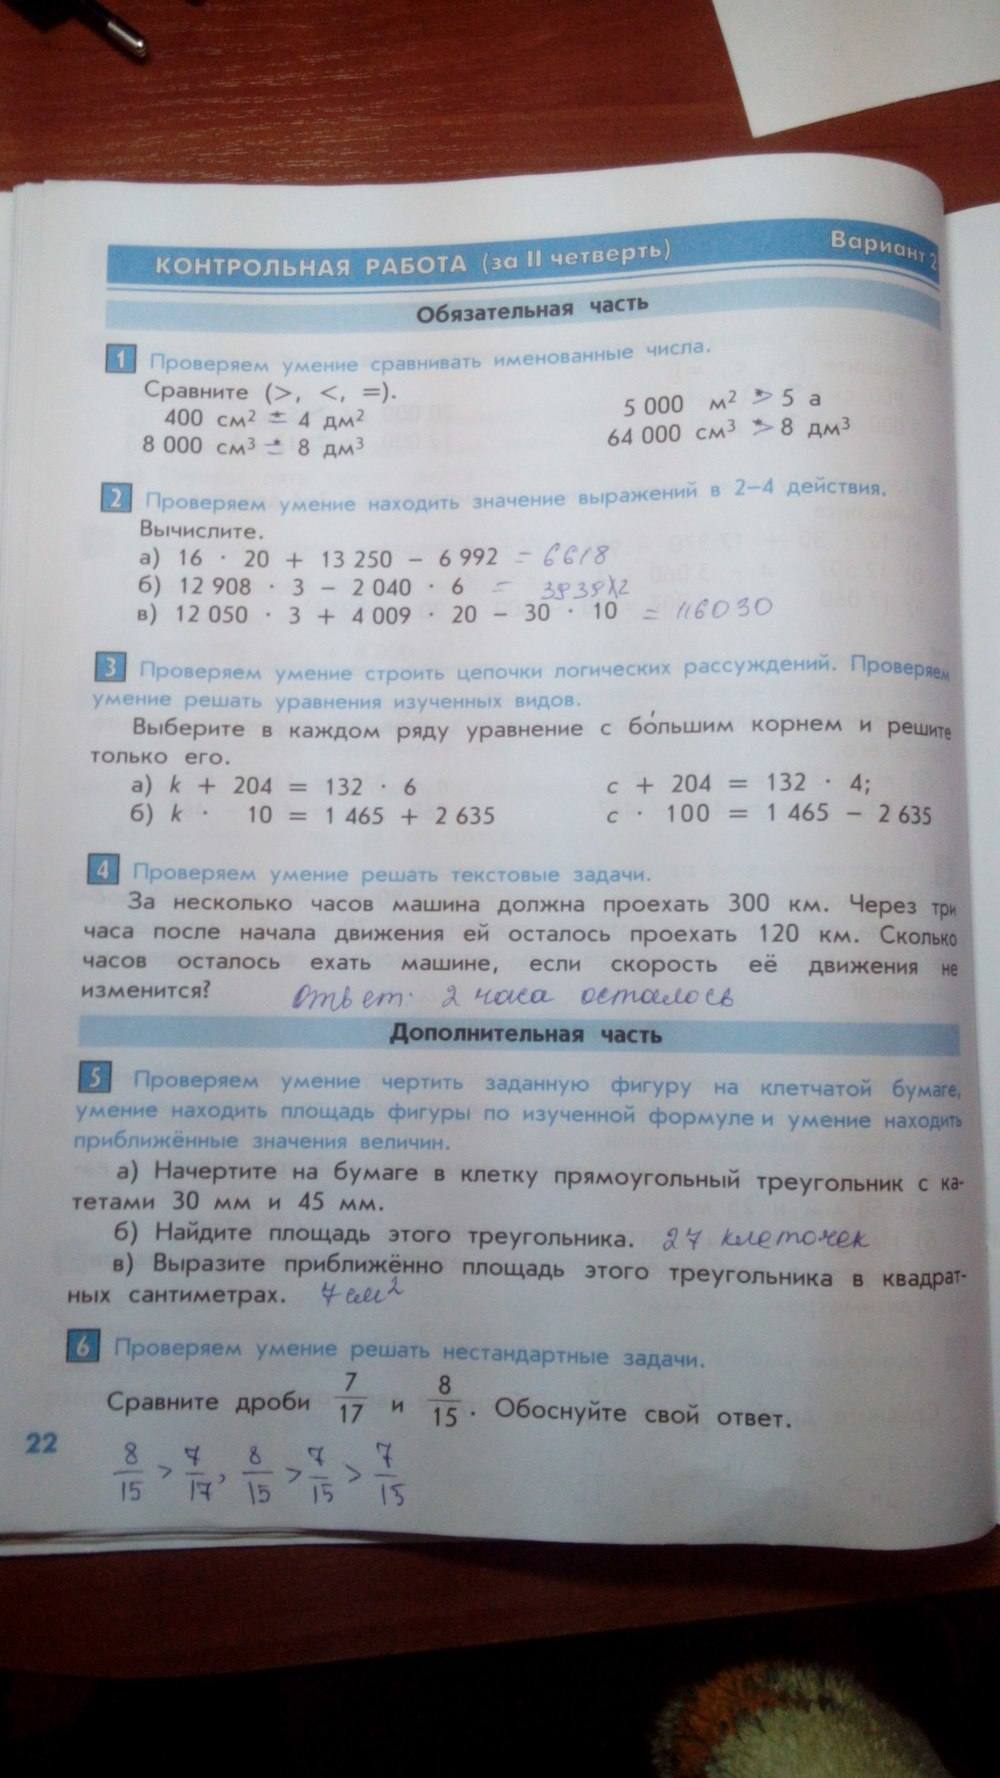 Тесты и контрольные работы, 4 класс, Козлова, Рубин, 2011, задание: стр. 22